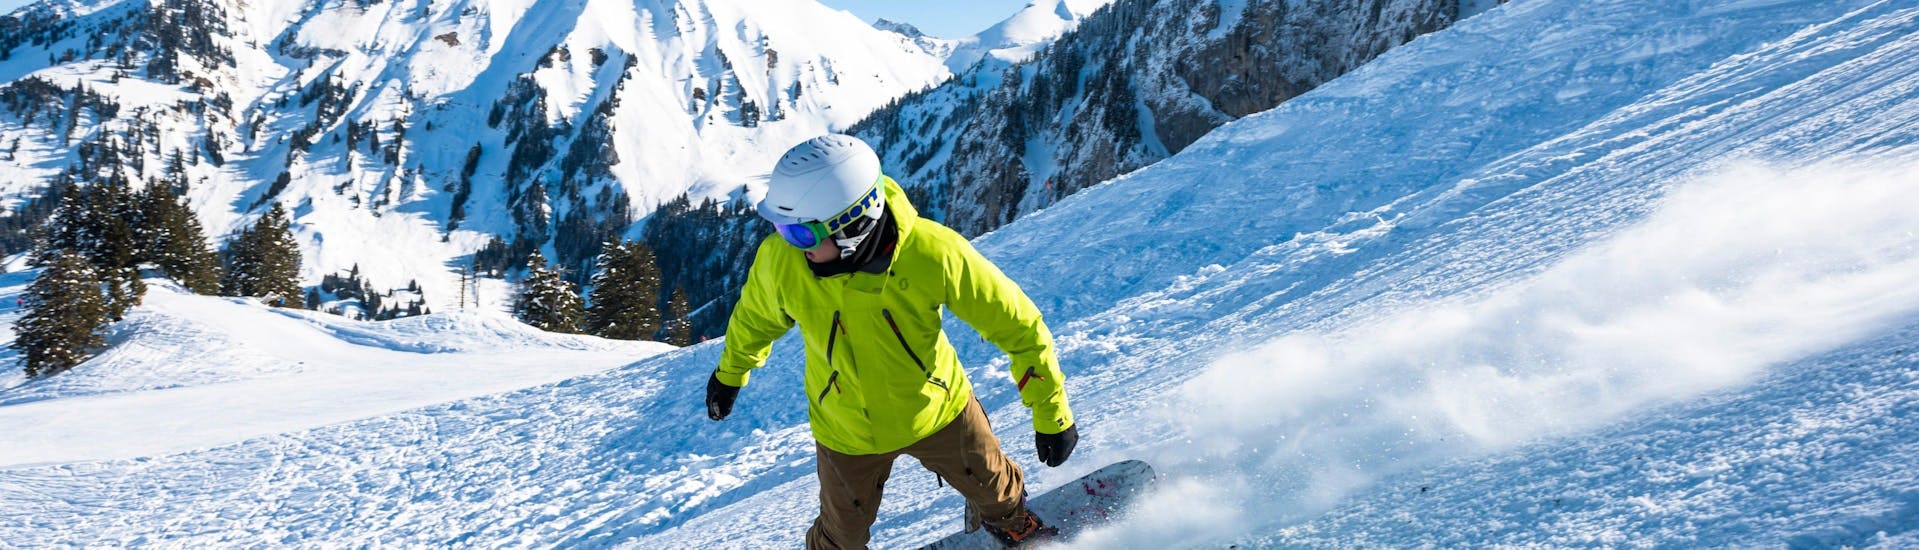 Un snowboardeur descend une piste avec assurance grâce à son Cours particulier de snowboard - Tous niveaux & âges avec l'école de ski suisse Charmey.